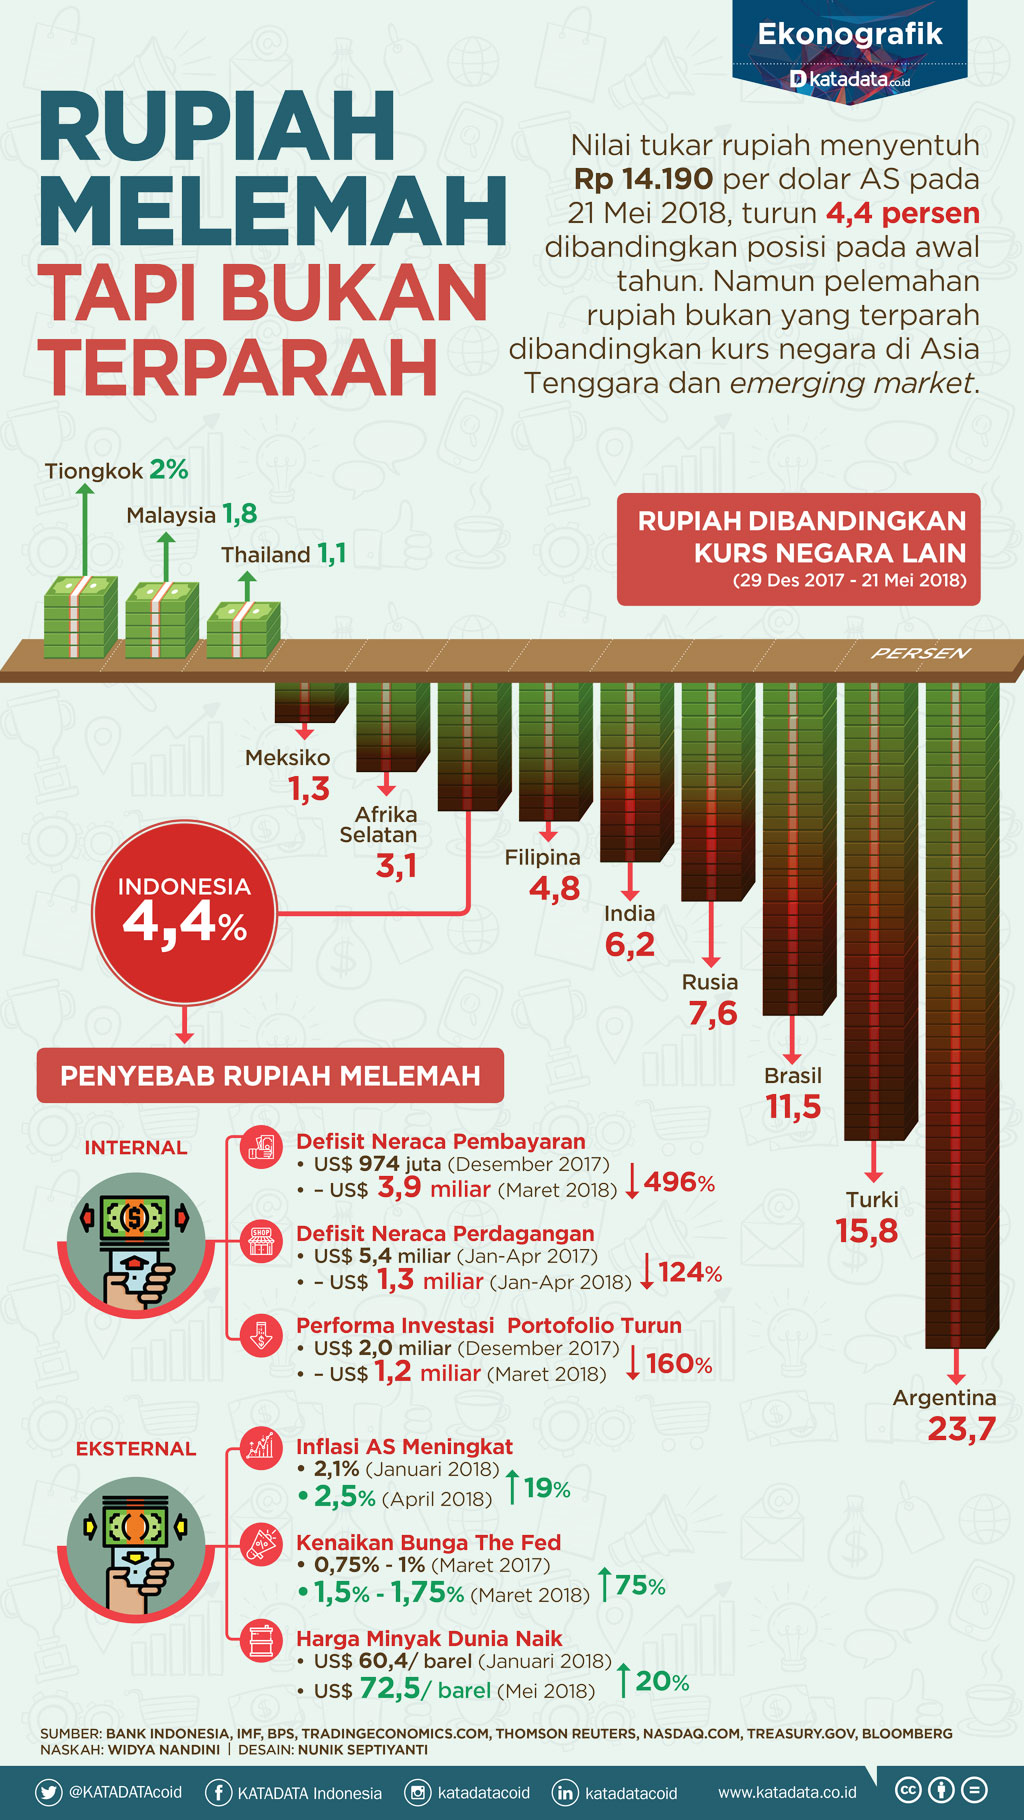 Rupiah Melemah, tapi Bukan Terparah - Infografik Katadata.co.id